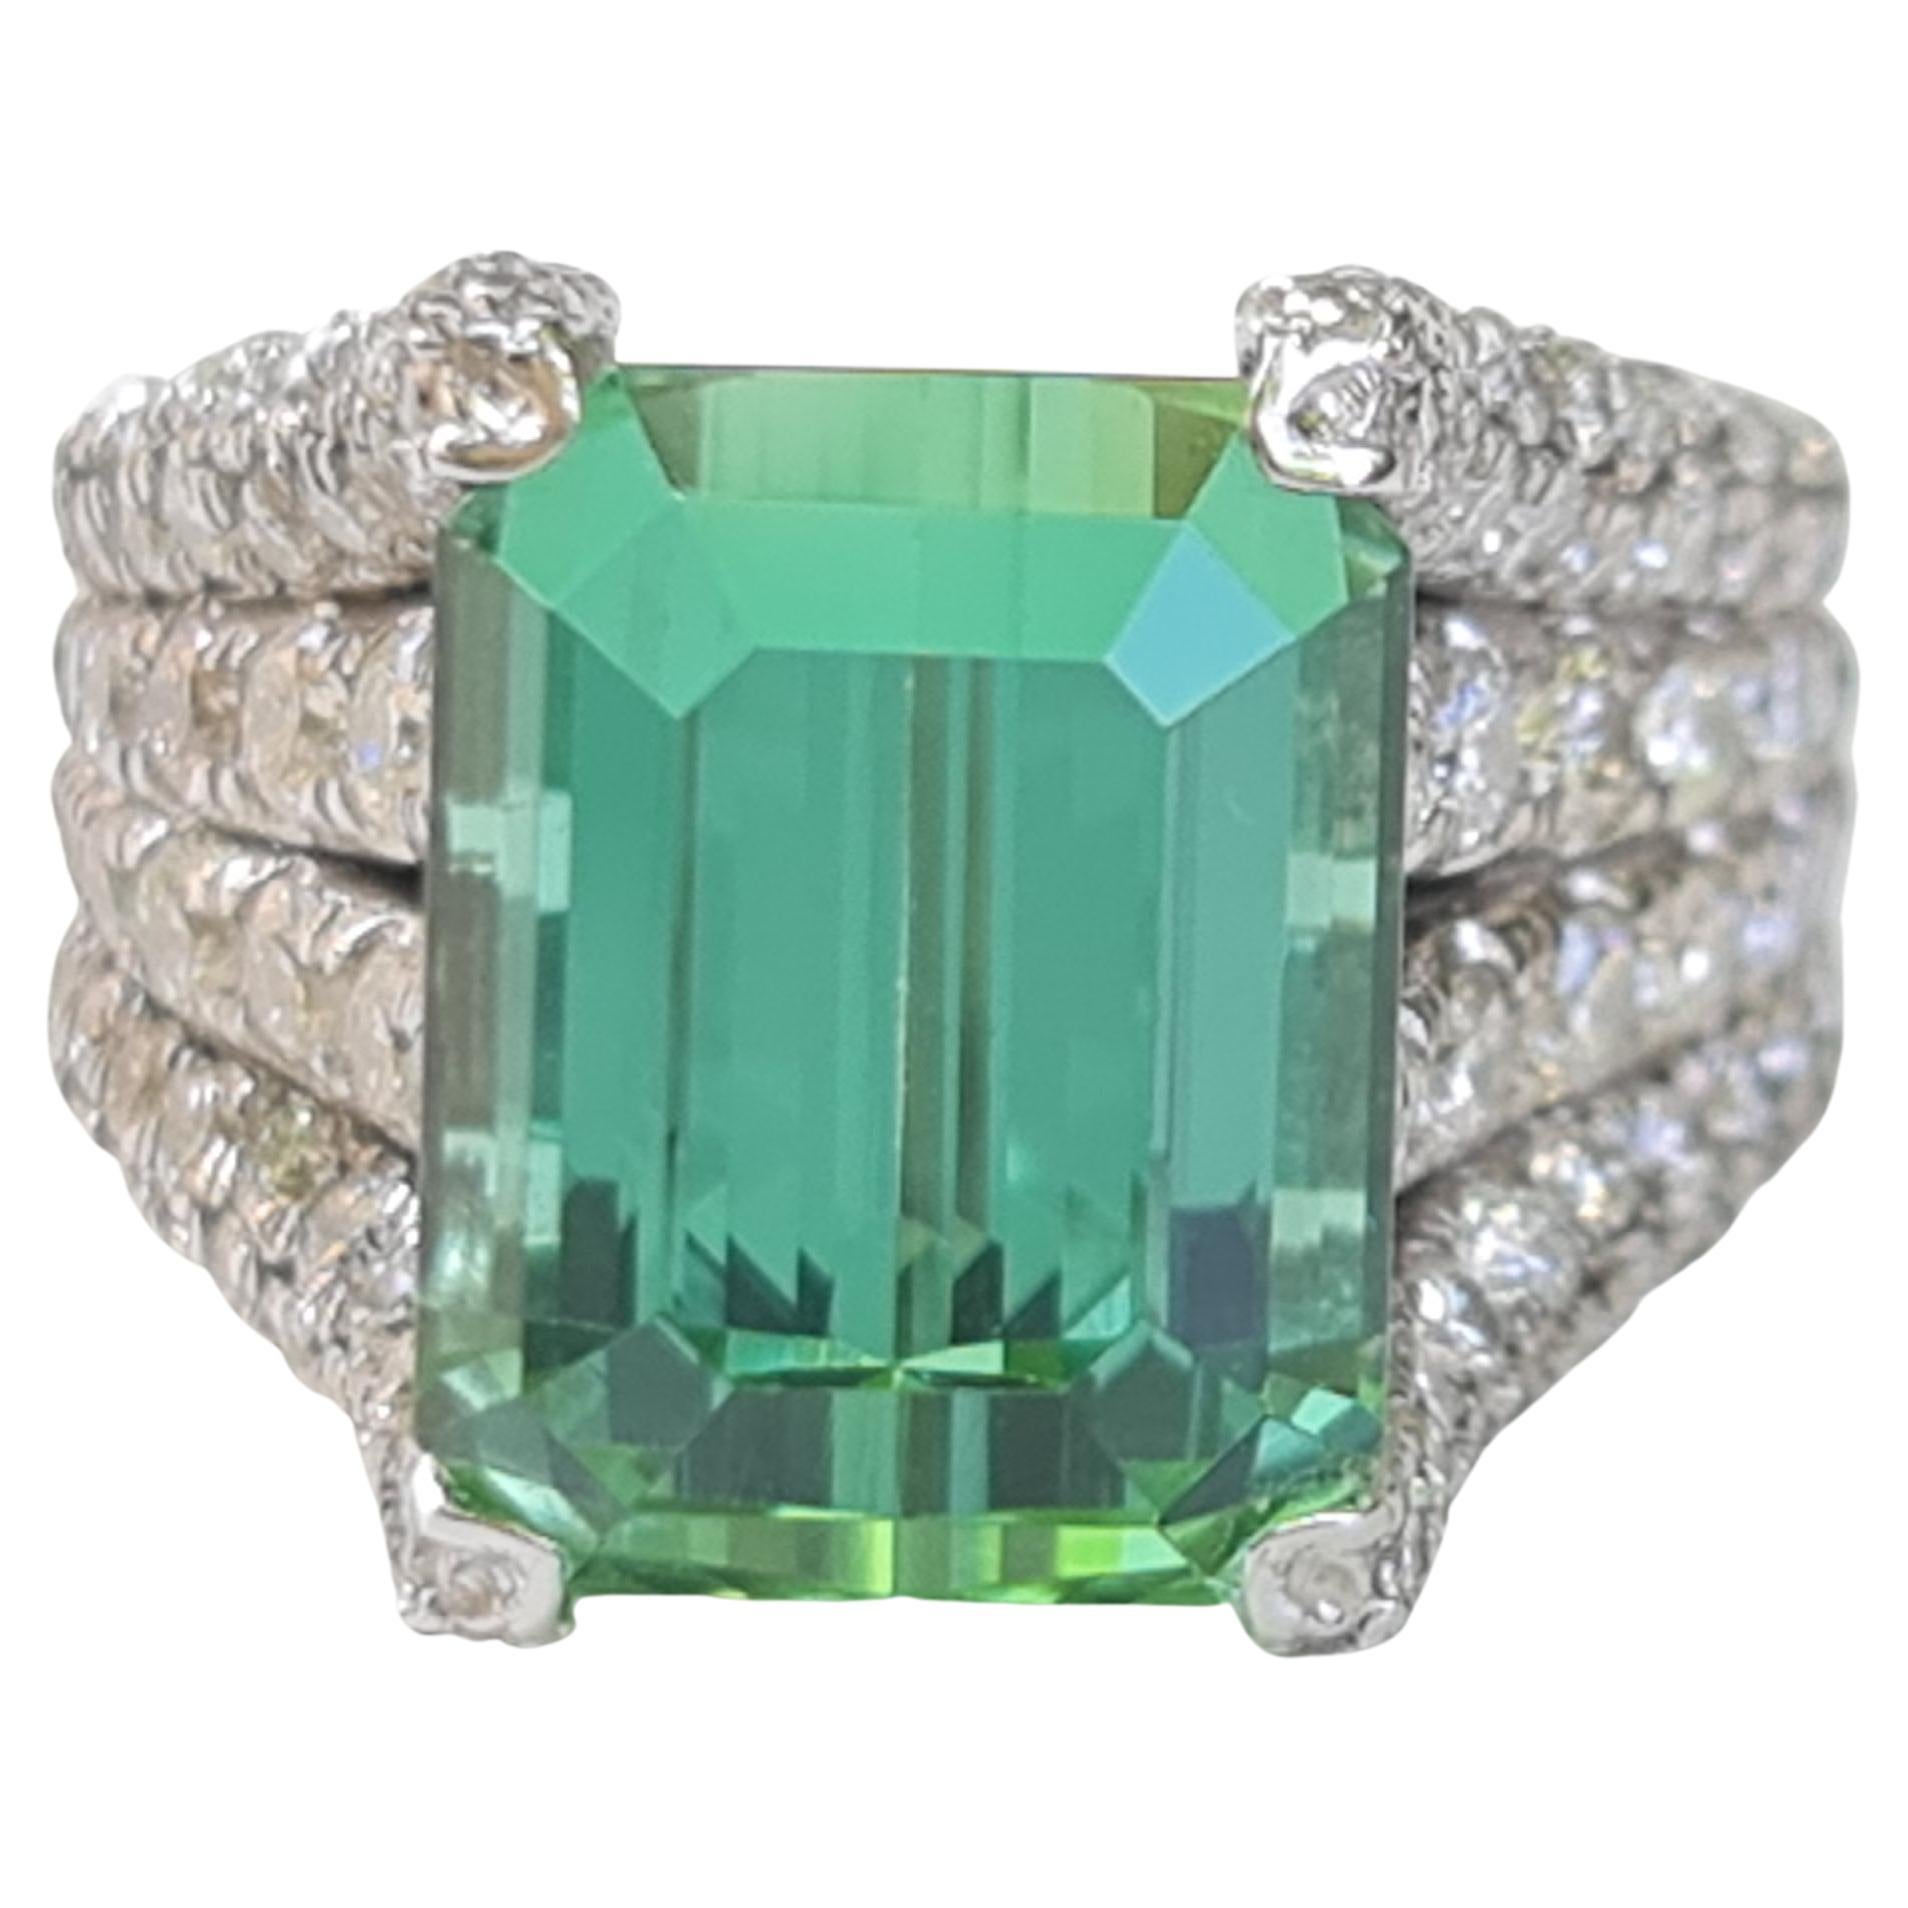 7.32 Carat Natural Green Tourmaline Ring with 1.92 Carat Natural Diamonds